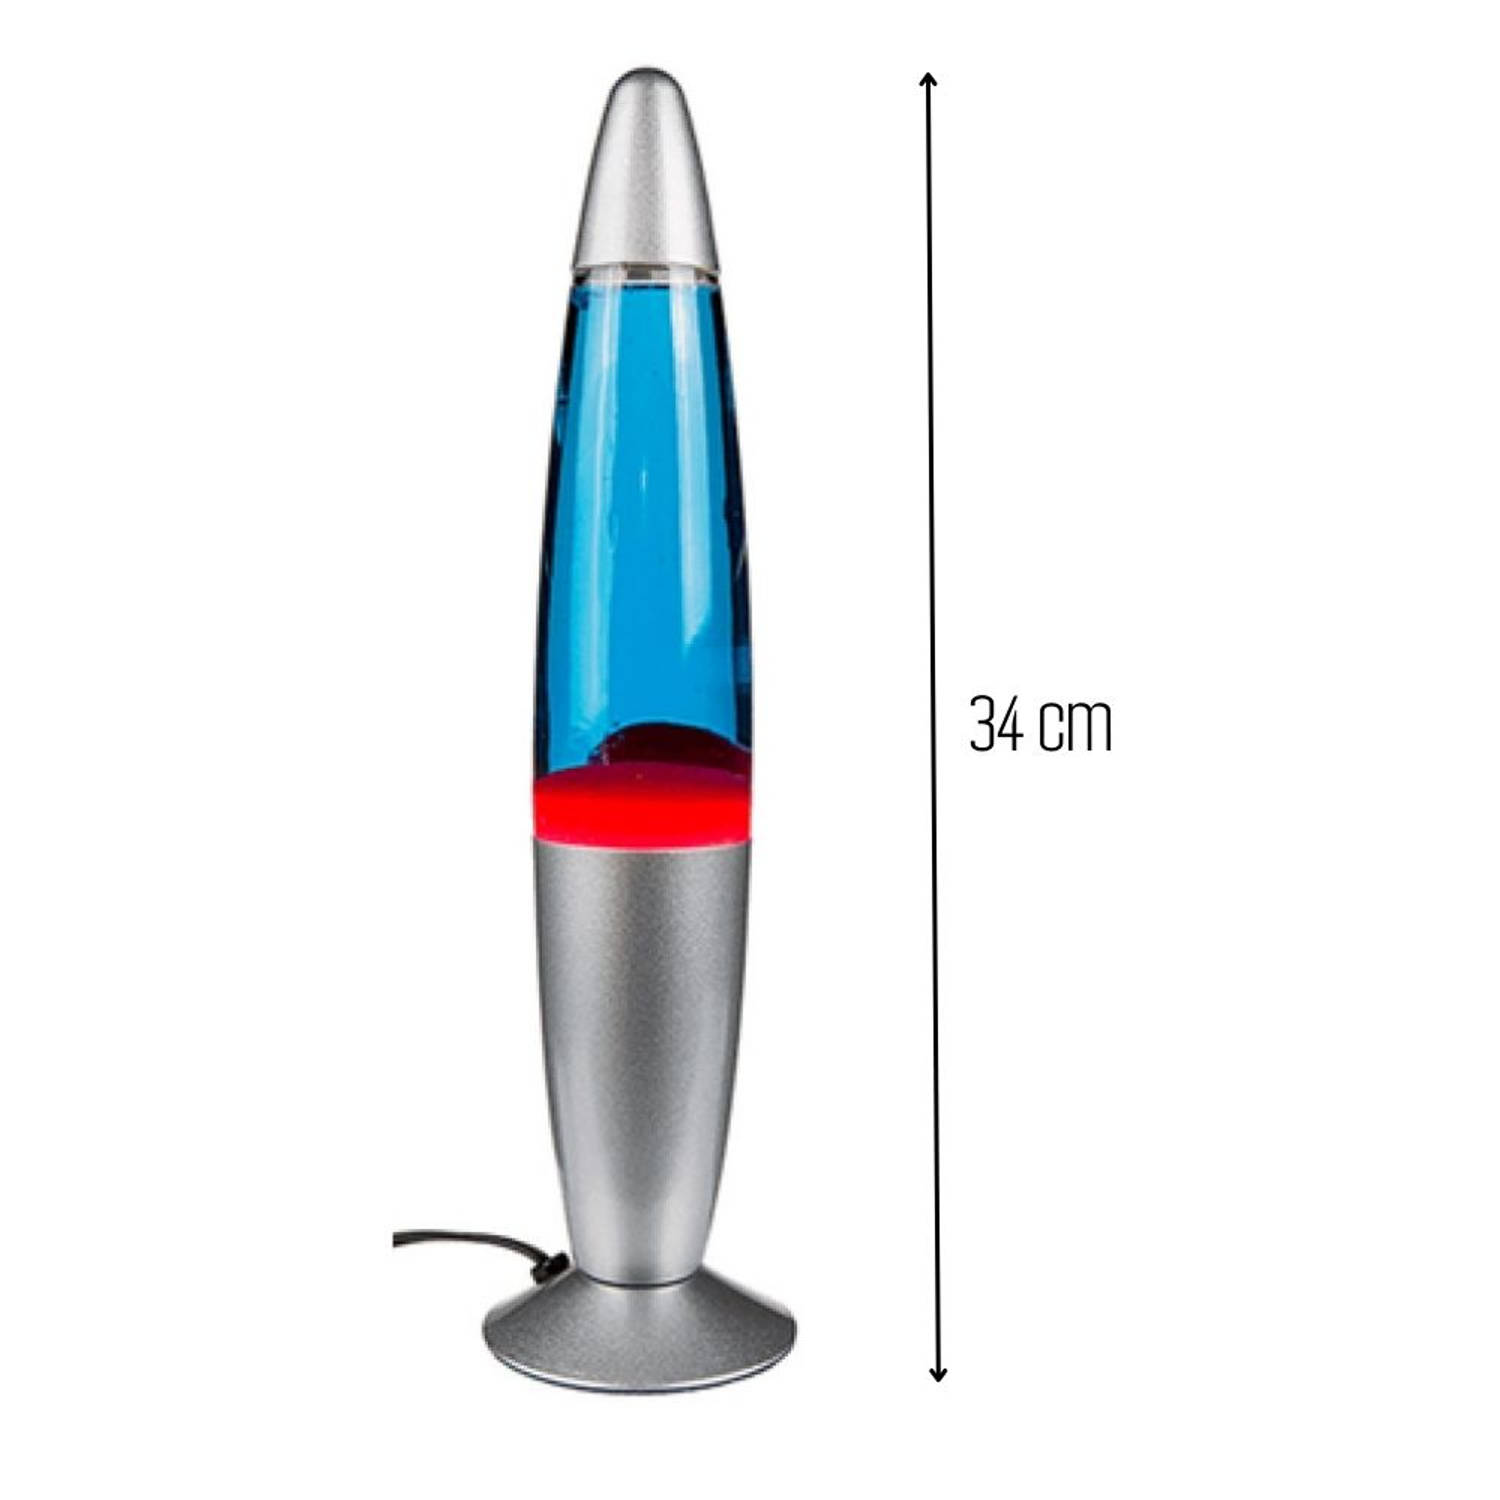 Orange85 Lavalamp - voor Kinderen - Rood Blauw - Raketvorm - 20W 34 cm - met Stekker | Blokker